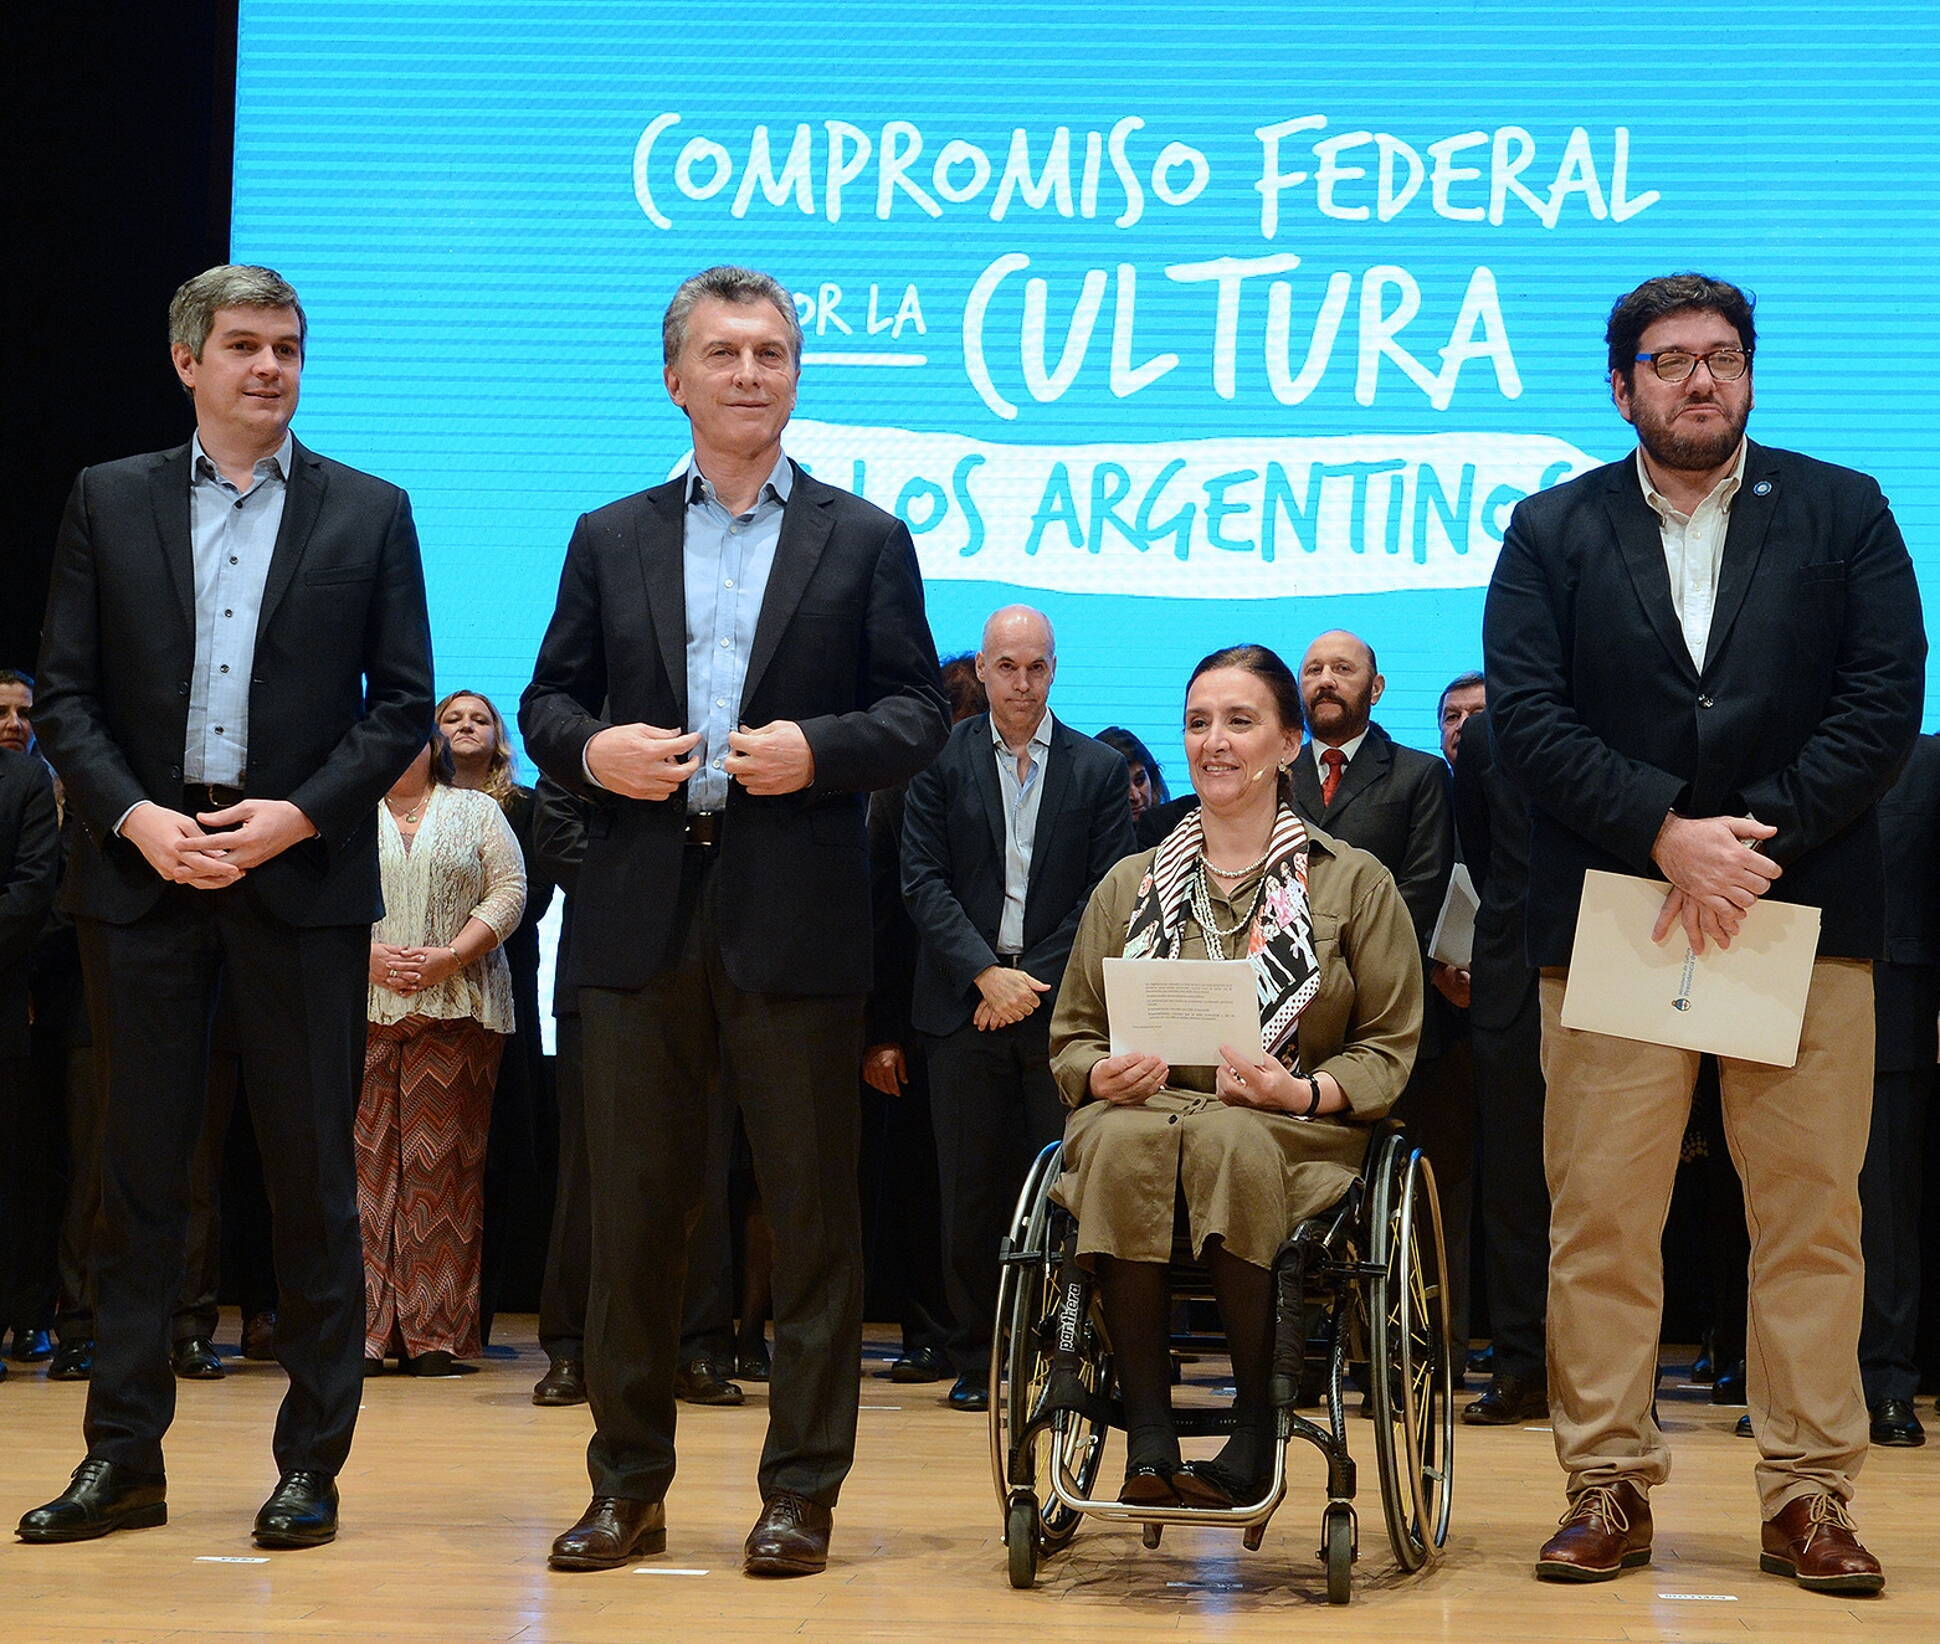 El presidente Macri presentó el Compromiso Federal por la cultura de los argentinos